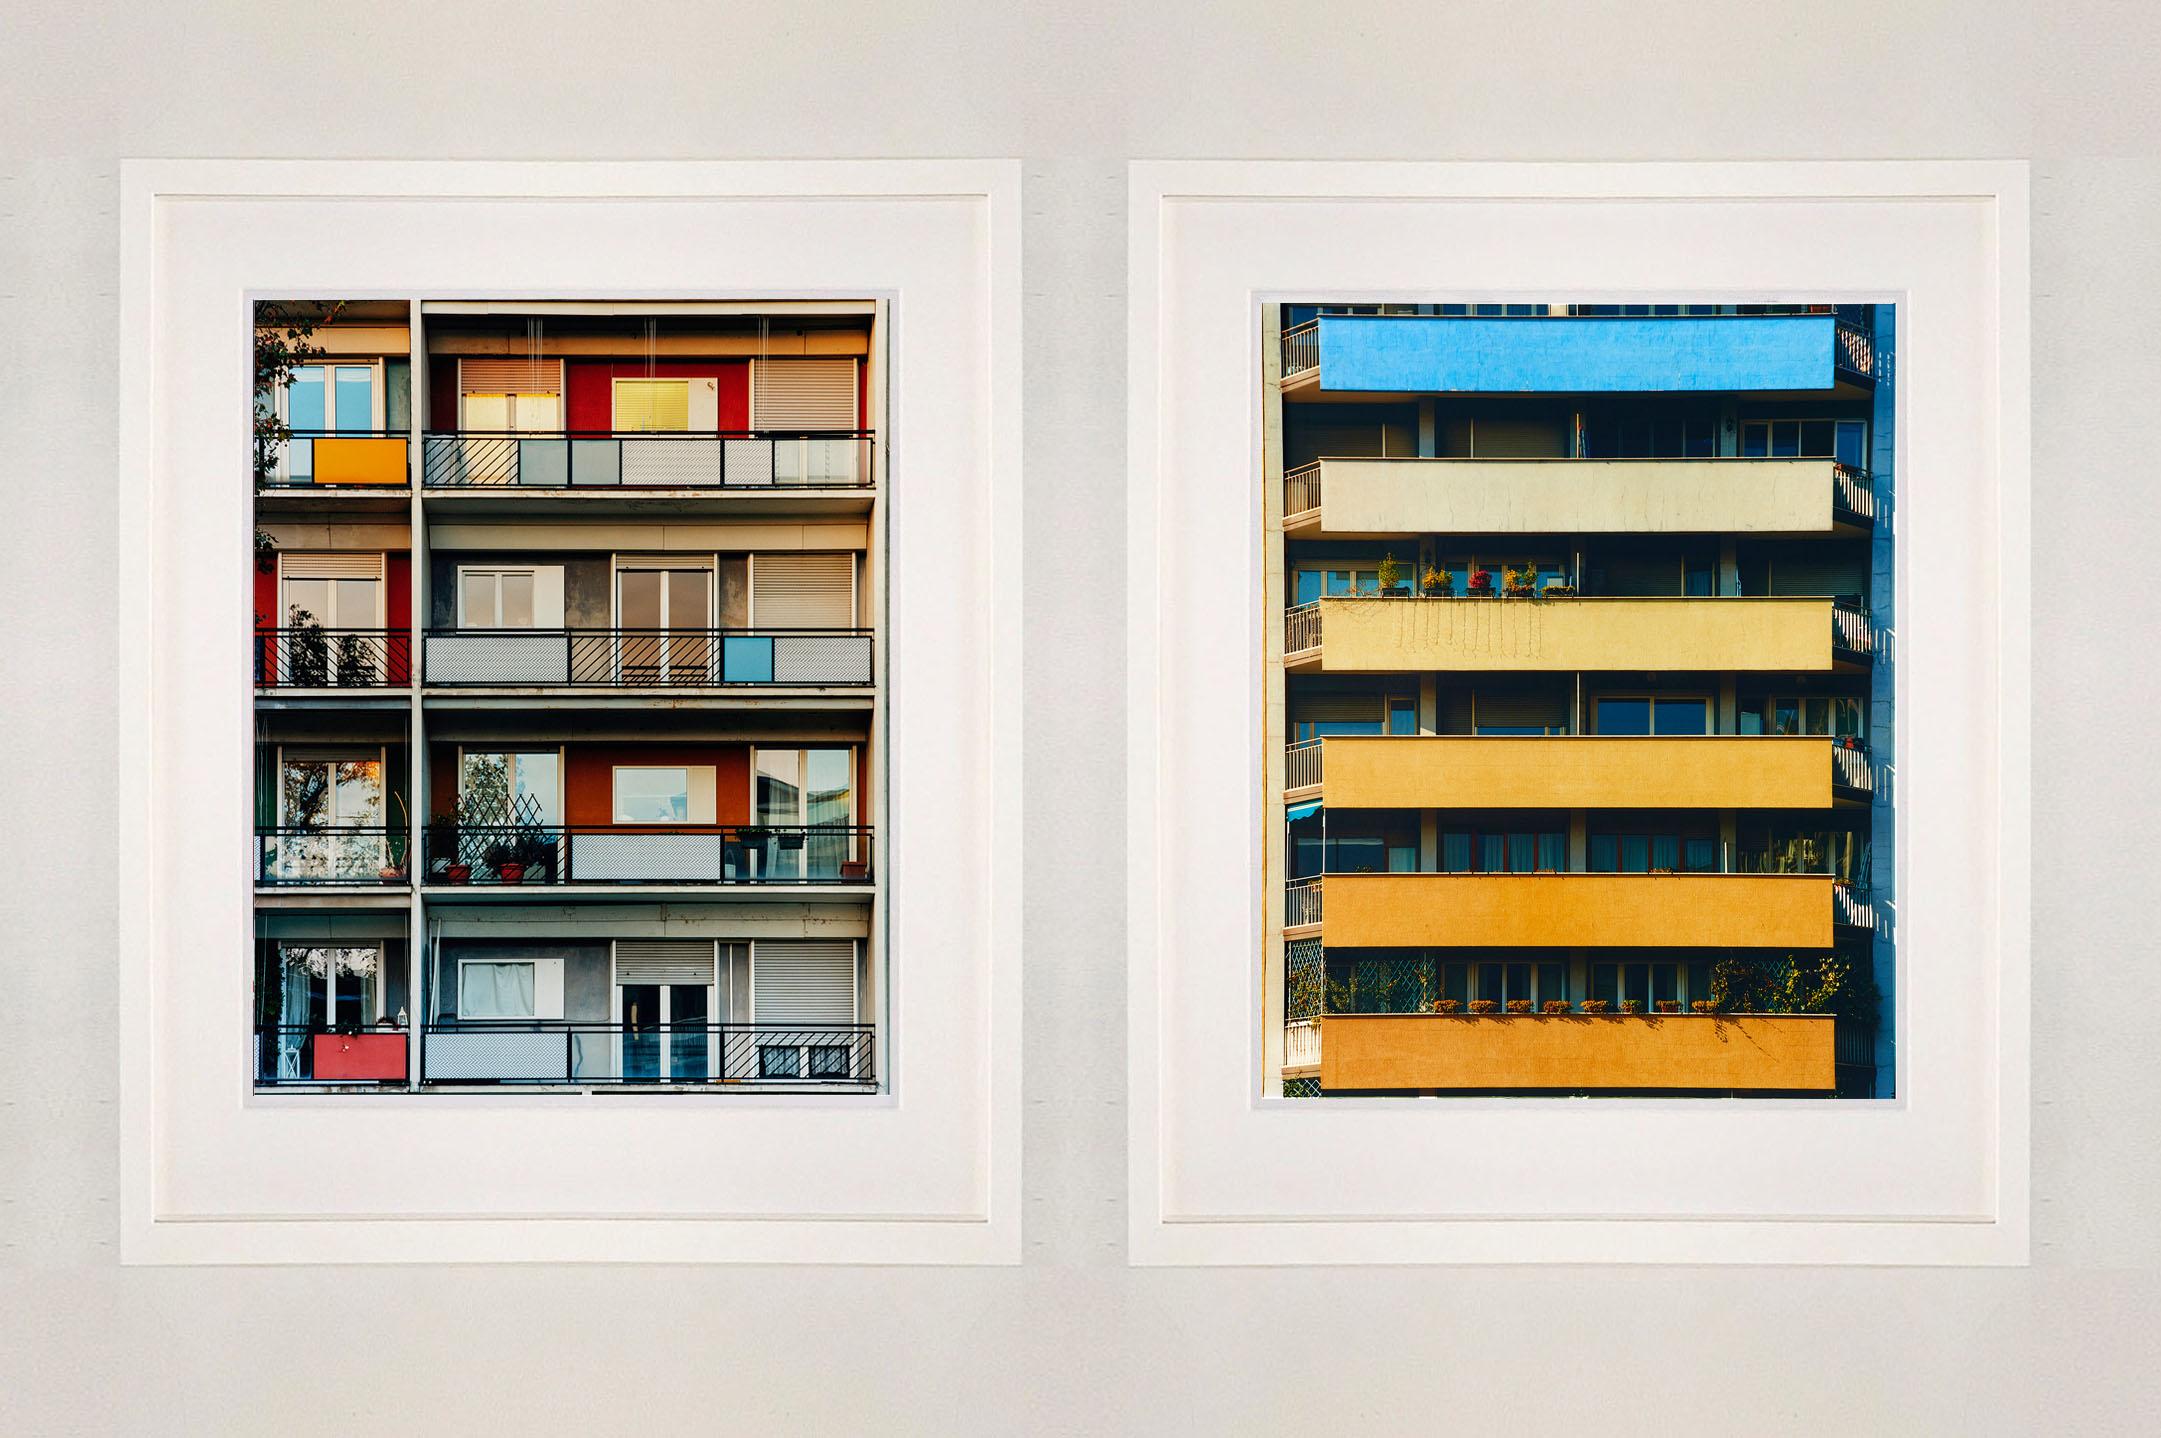 Rainbow Apartments, italienische Architekturfotografie aus Richard Heeps Serie A Short History of Milan. 

A Short History of Milan